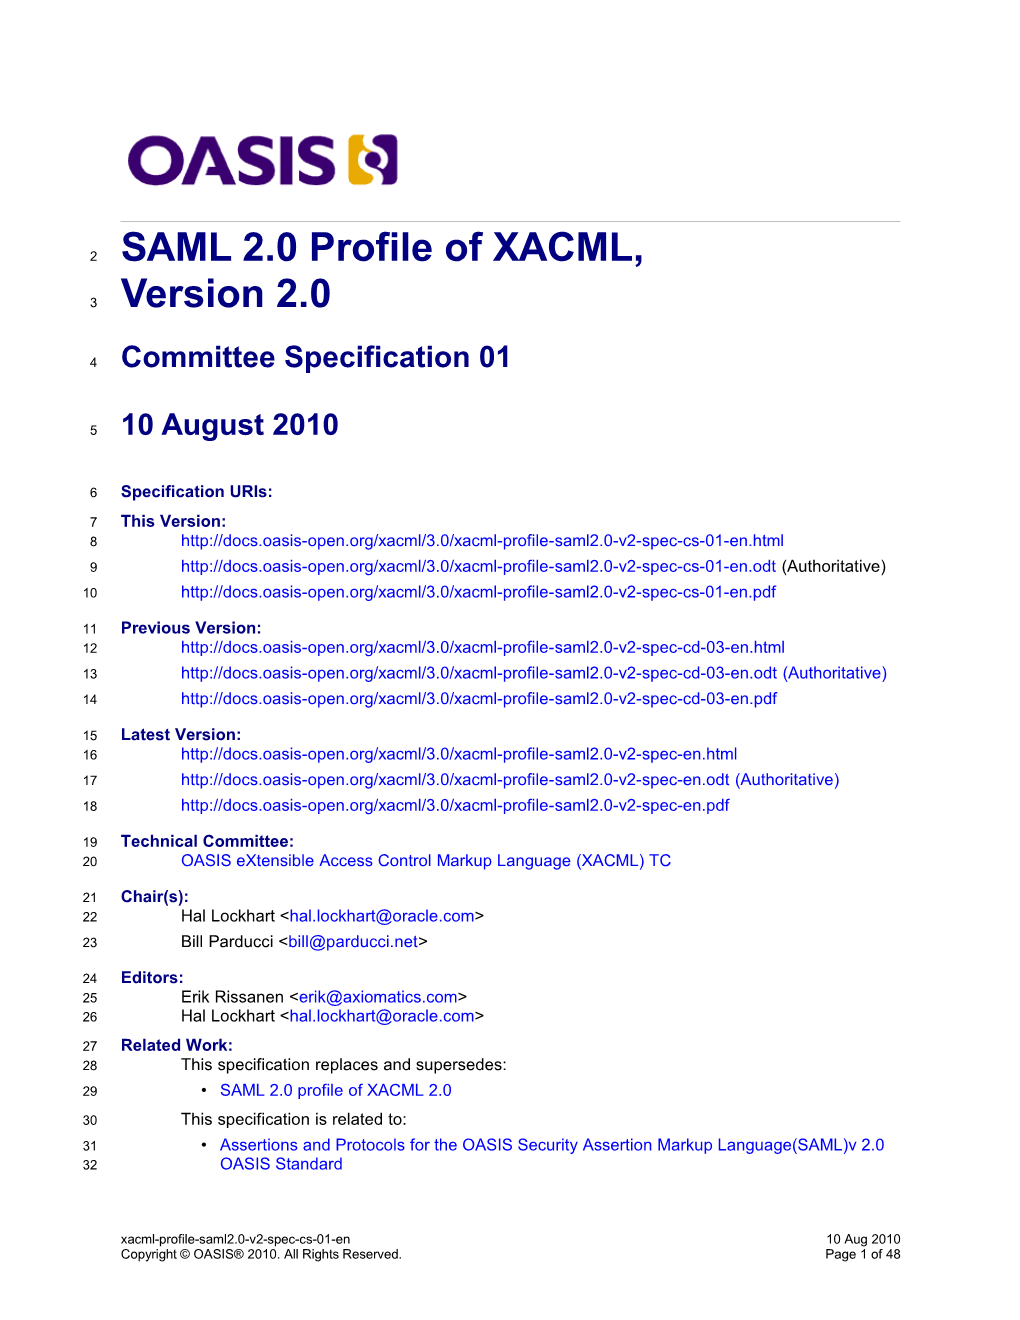 SAML 2.0 Profile of XACML 2.0 V2